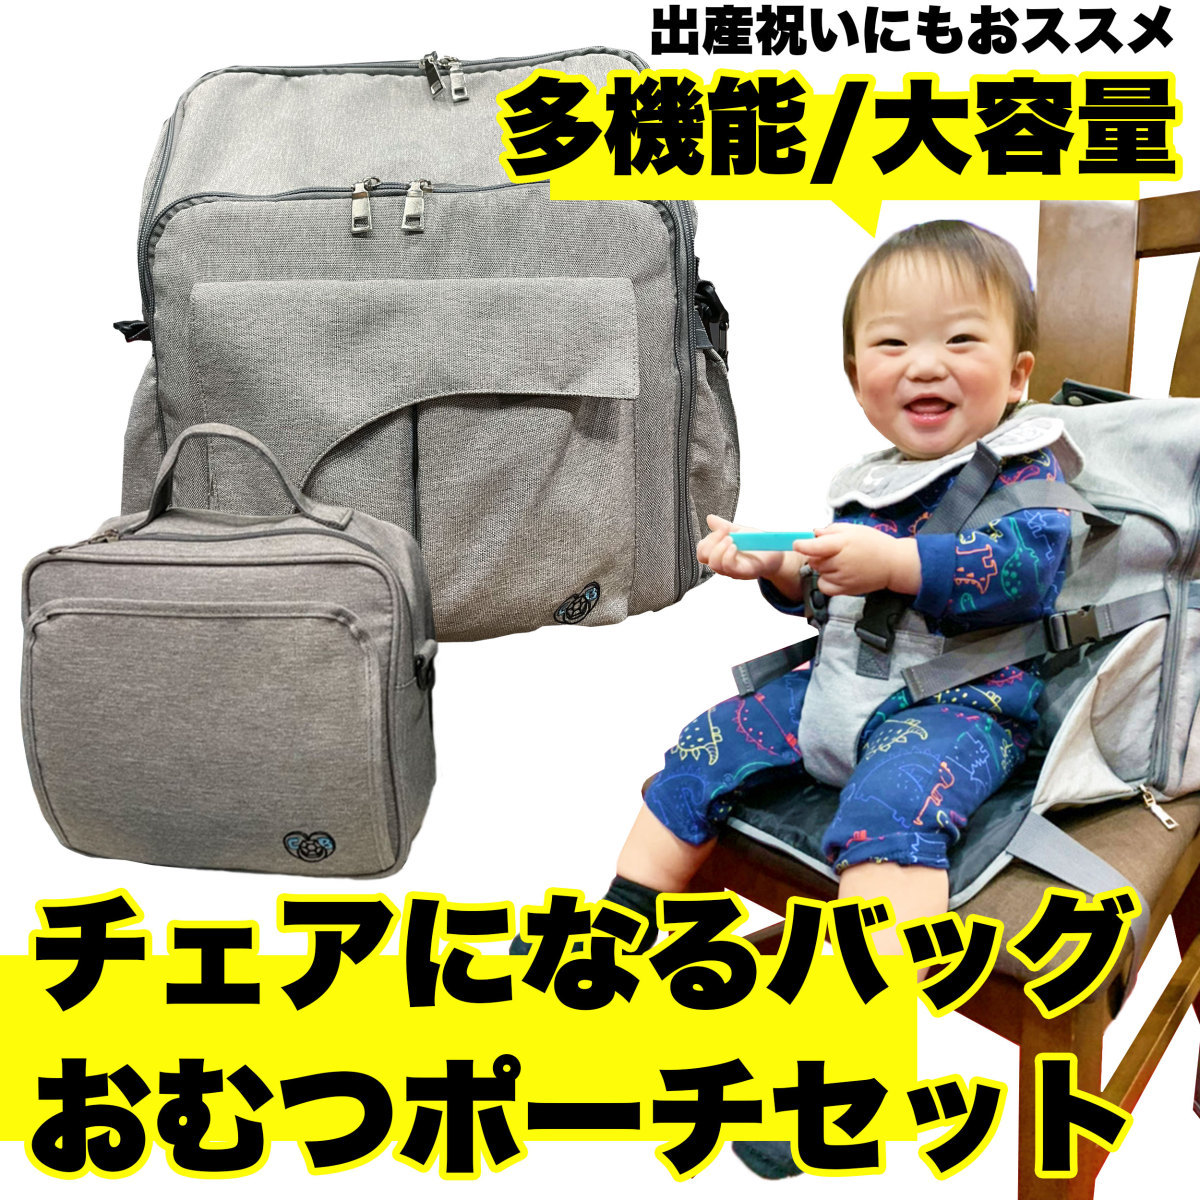  "мамина сумка" подгузники сумка рюкзак большая вместимость легкий 5way детский стул стать плечо комплект теплоизоляция термос бутылочка для кормления держатель имеется 